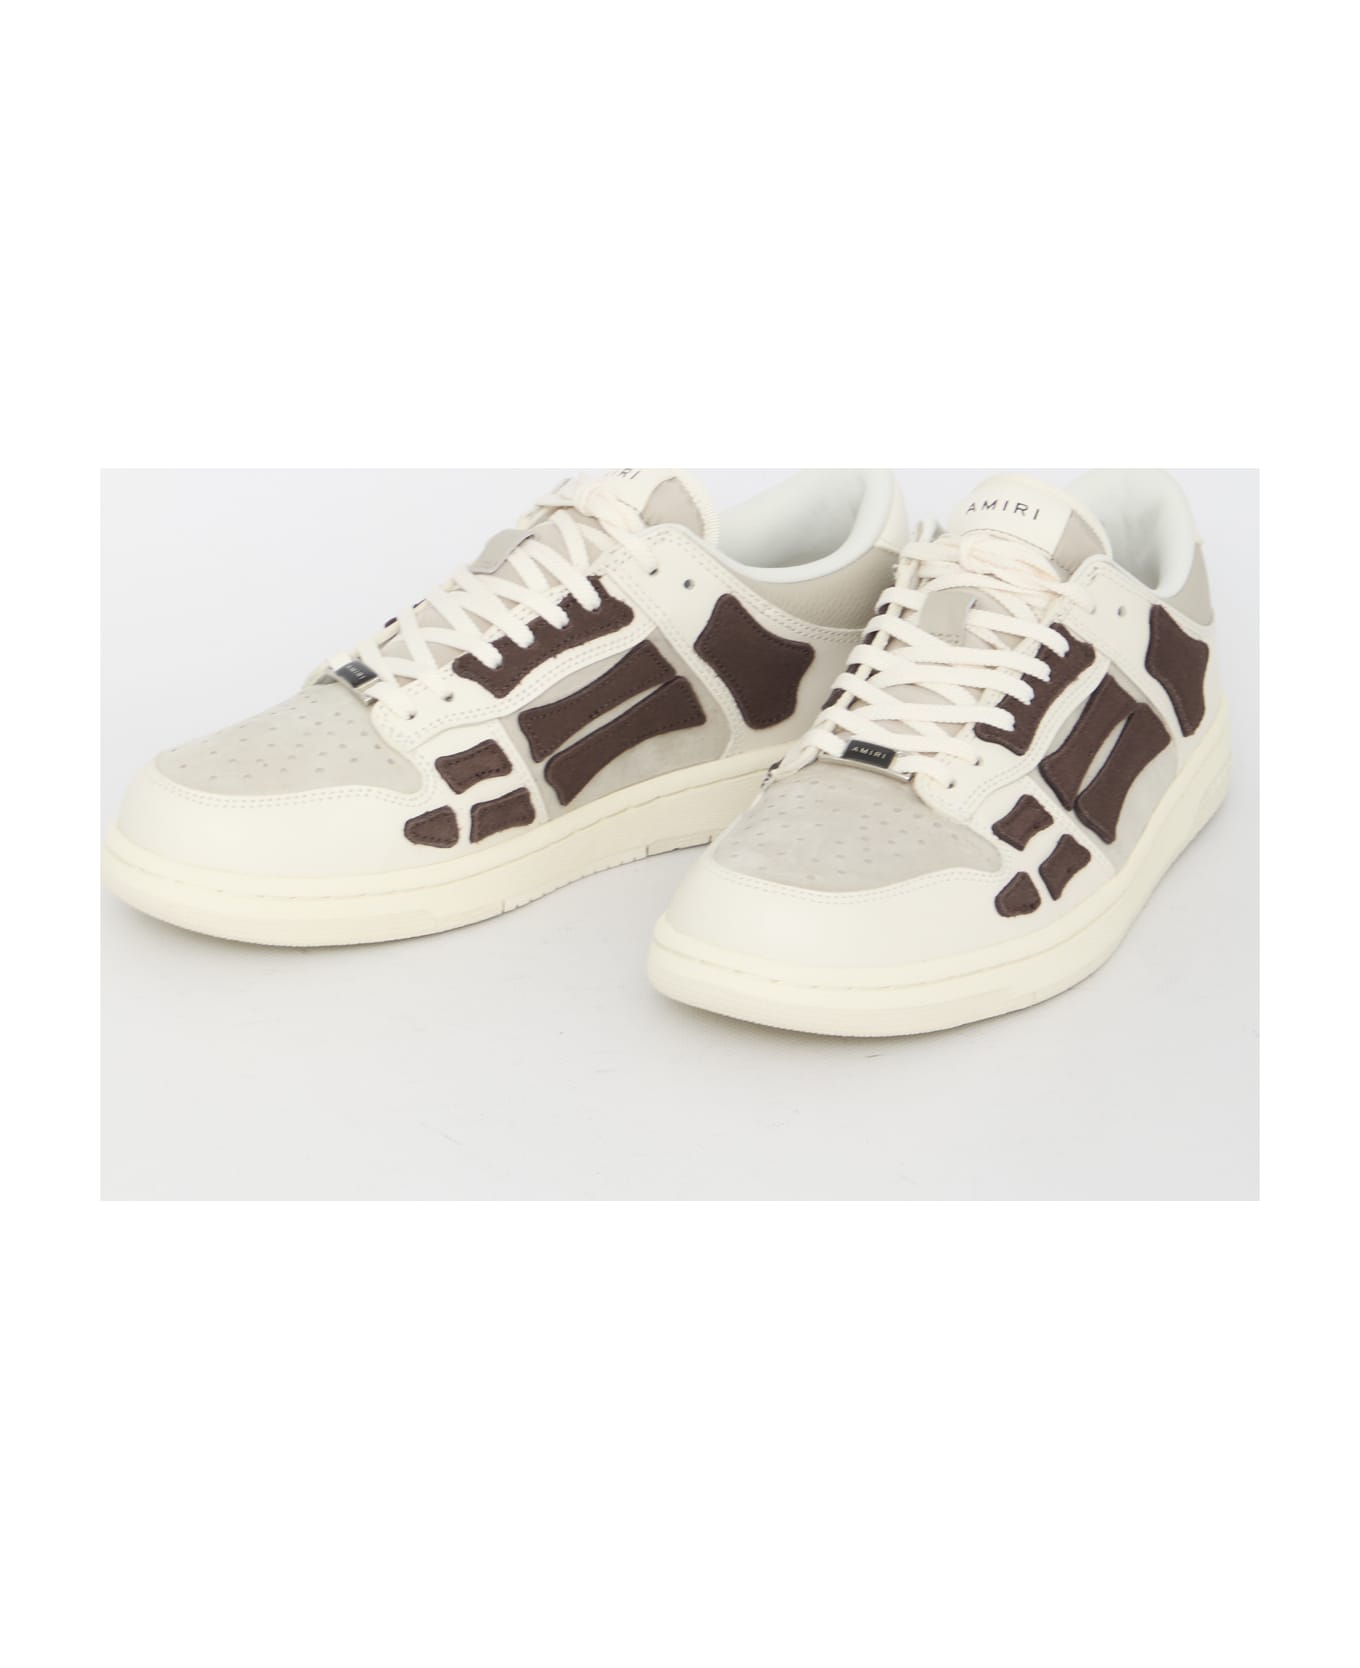 AMIRI Skel Top Low Sneakers - WHITE